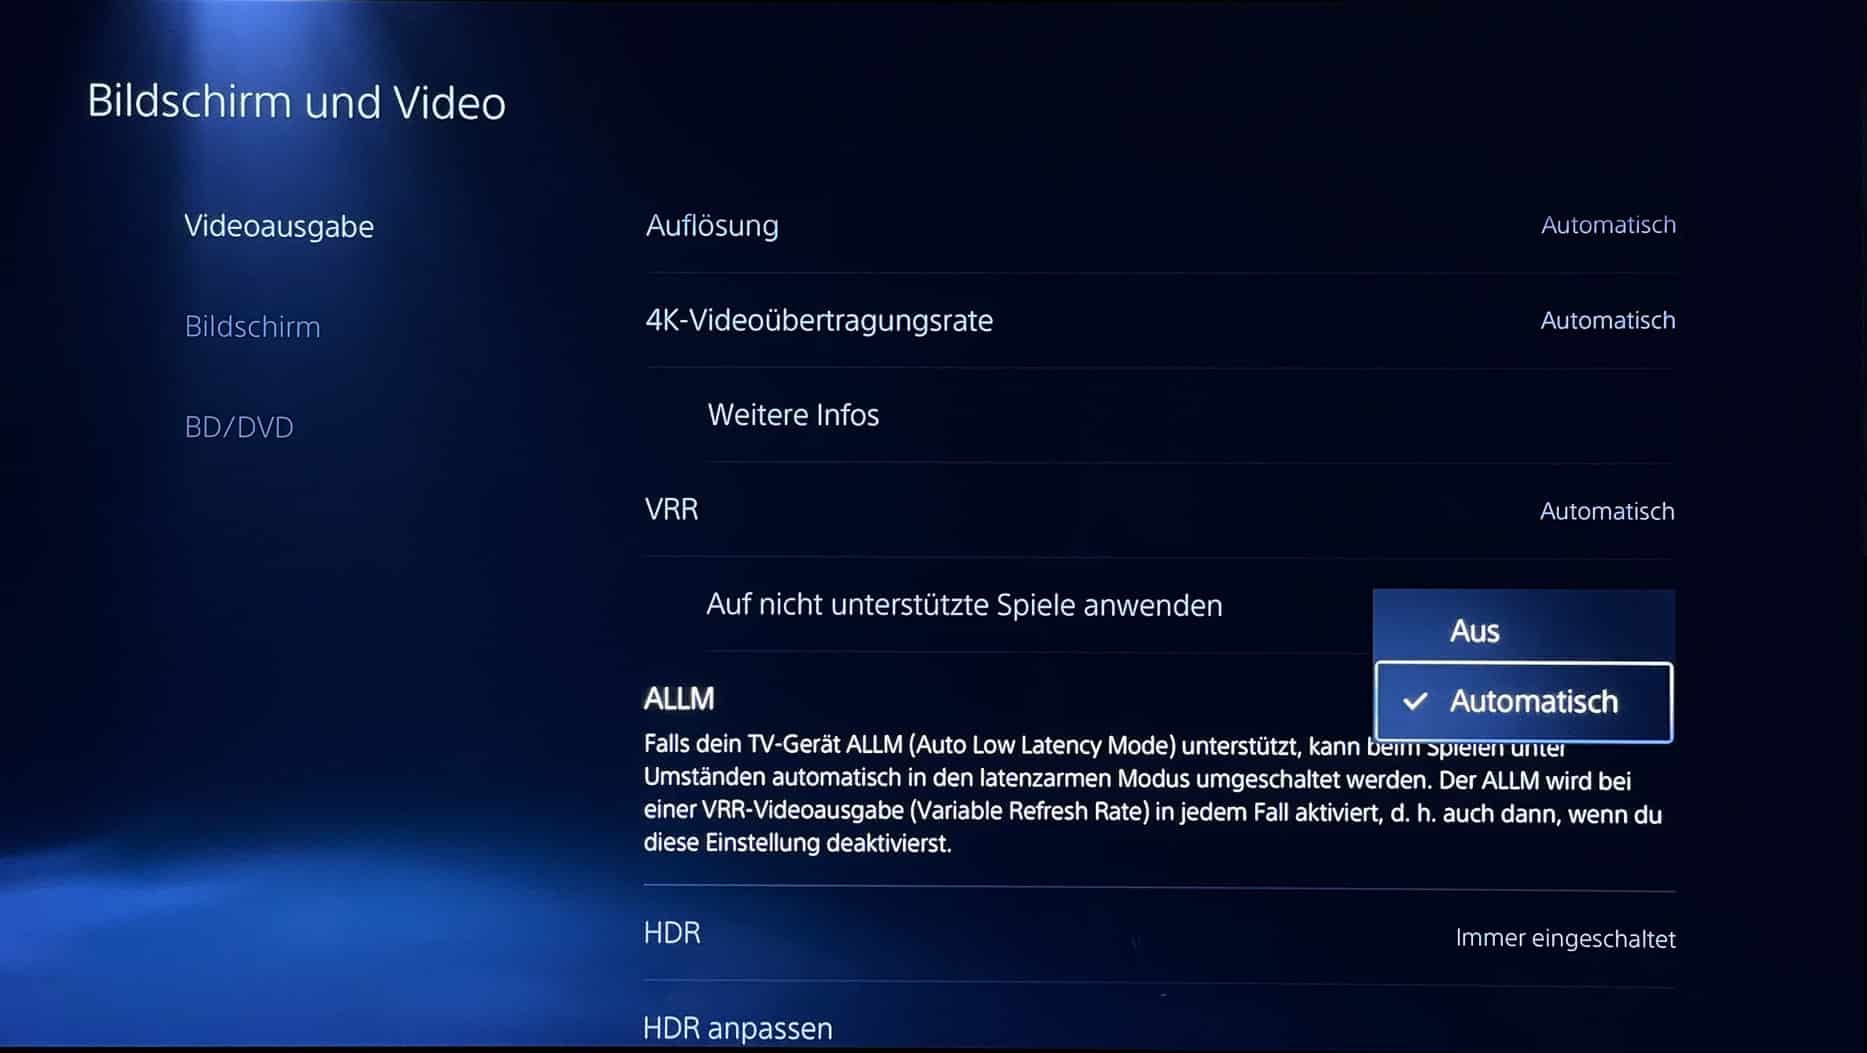 Sunset Overdrive - Sony sichert sich die IP, Fortsetzung auf PS5